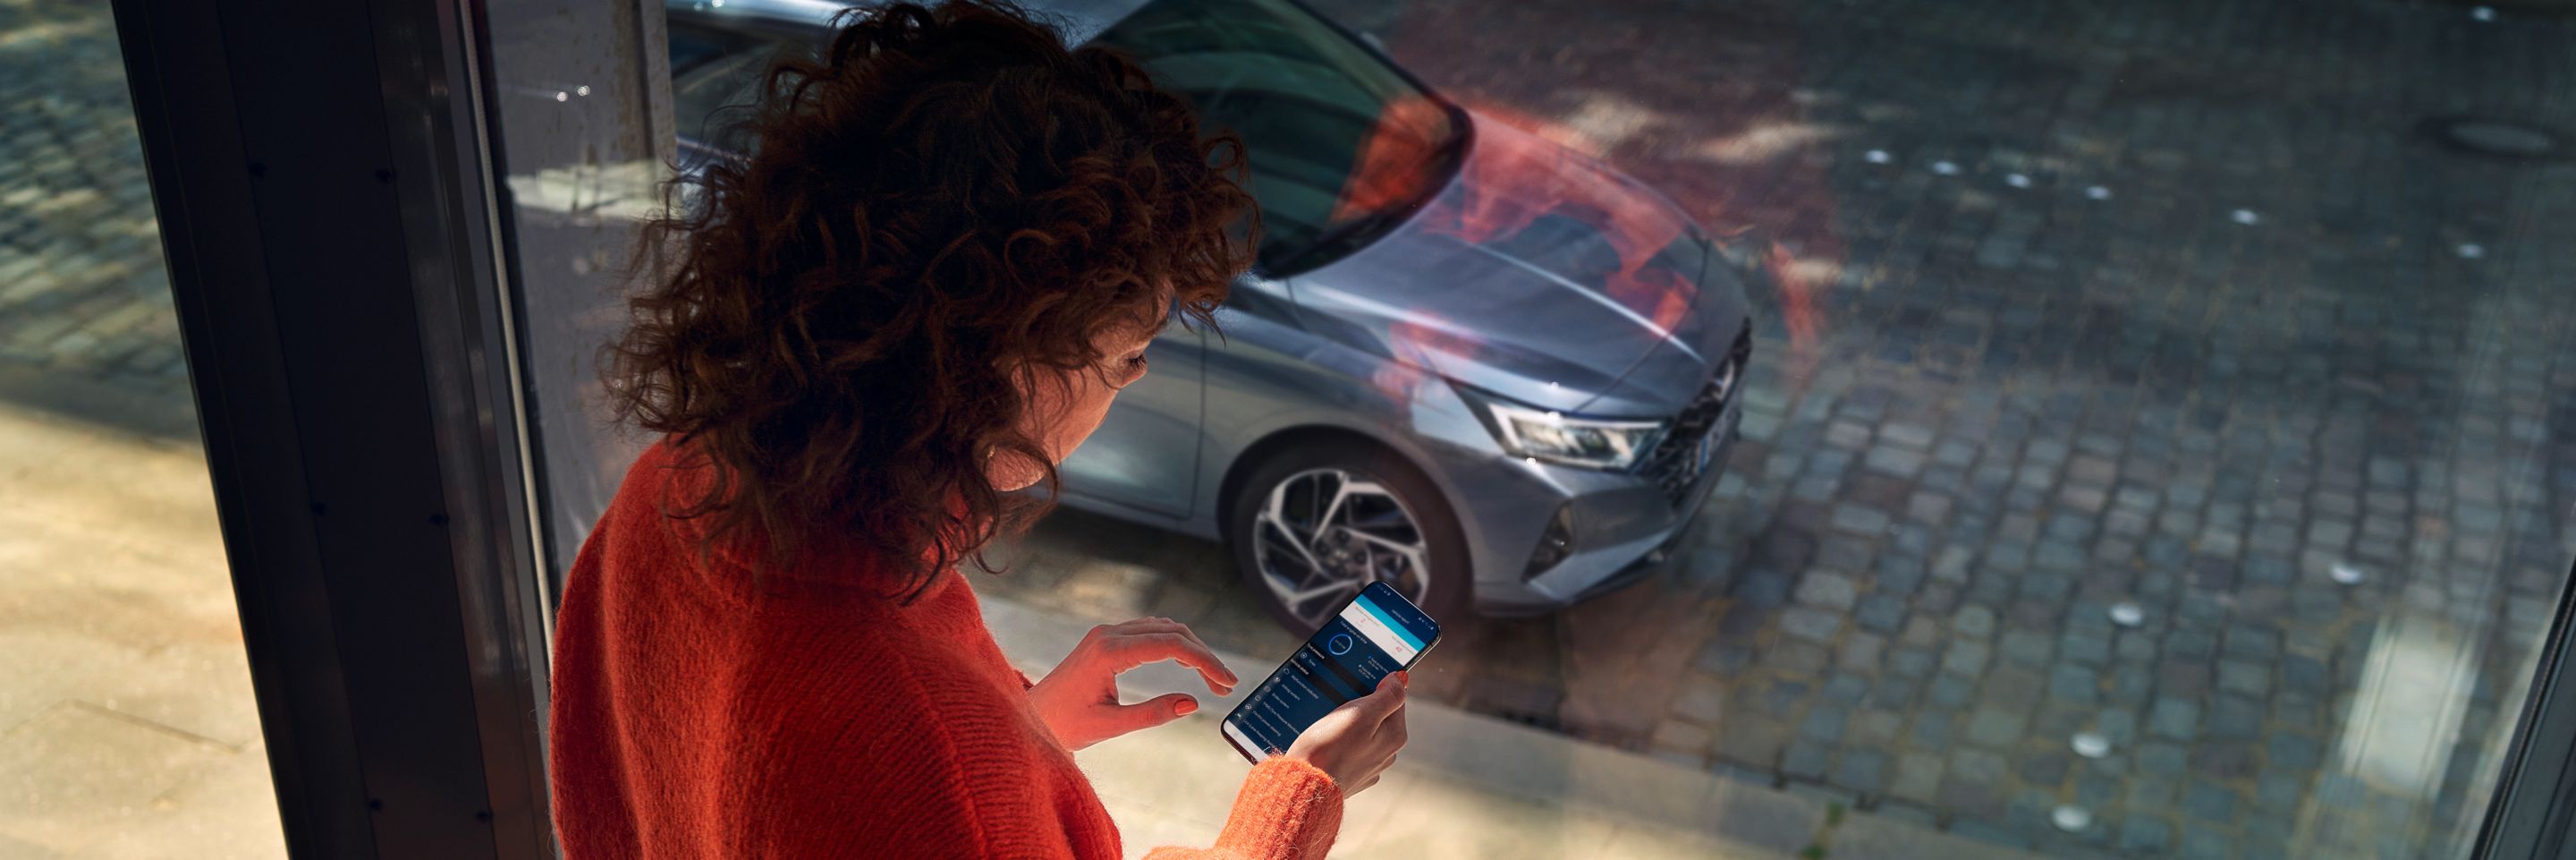 Žena dívající se na aplikaci Hyundai Bluelink na svém smartphonu, její Hyundai i20 je zaparkovaný venku.